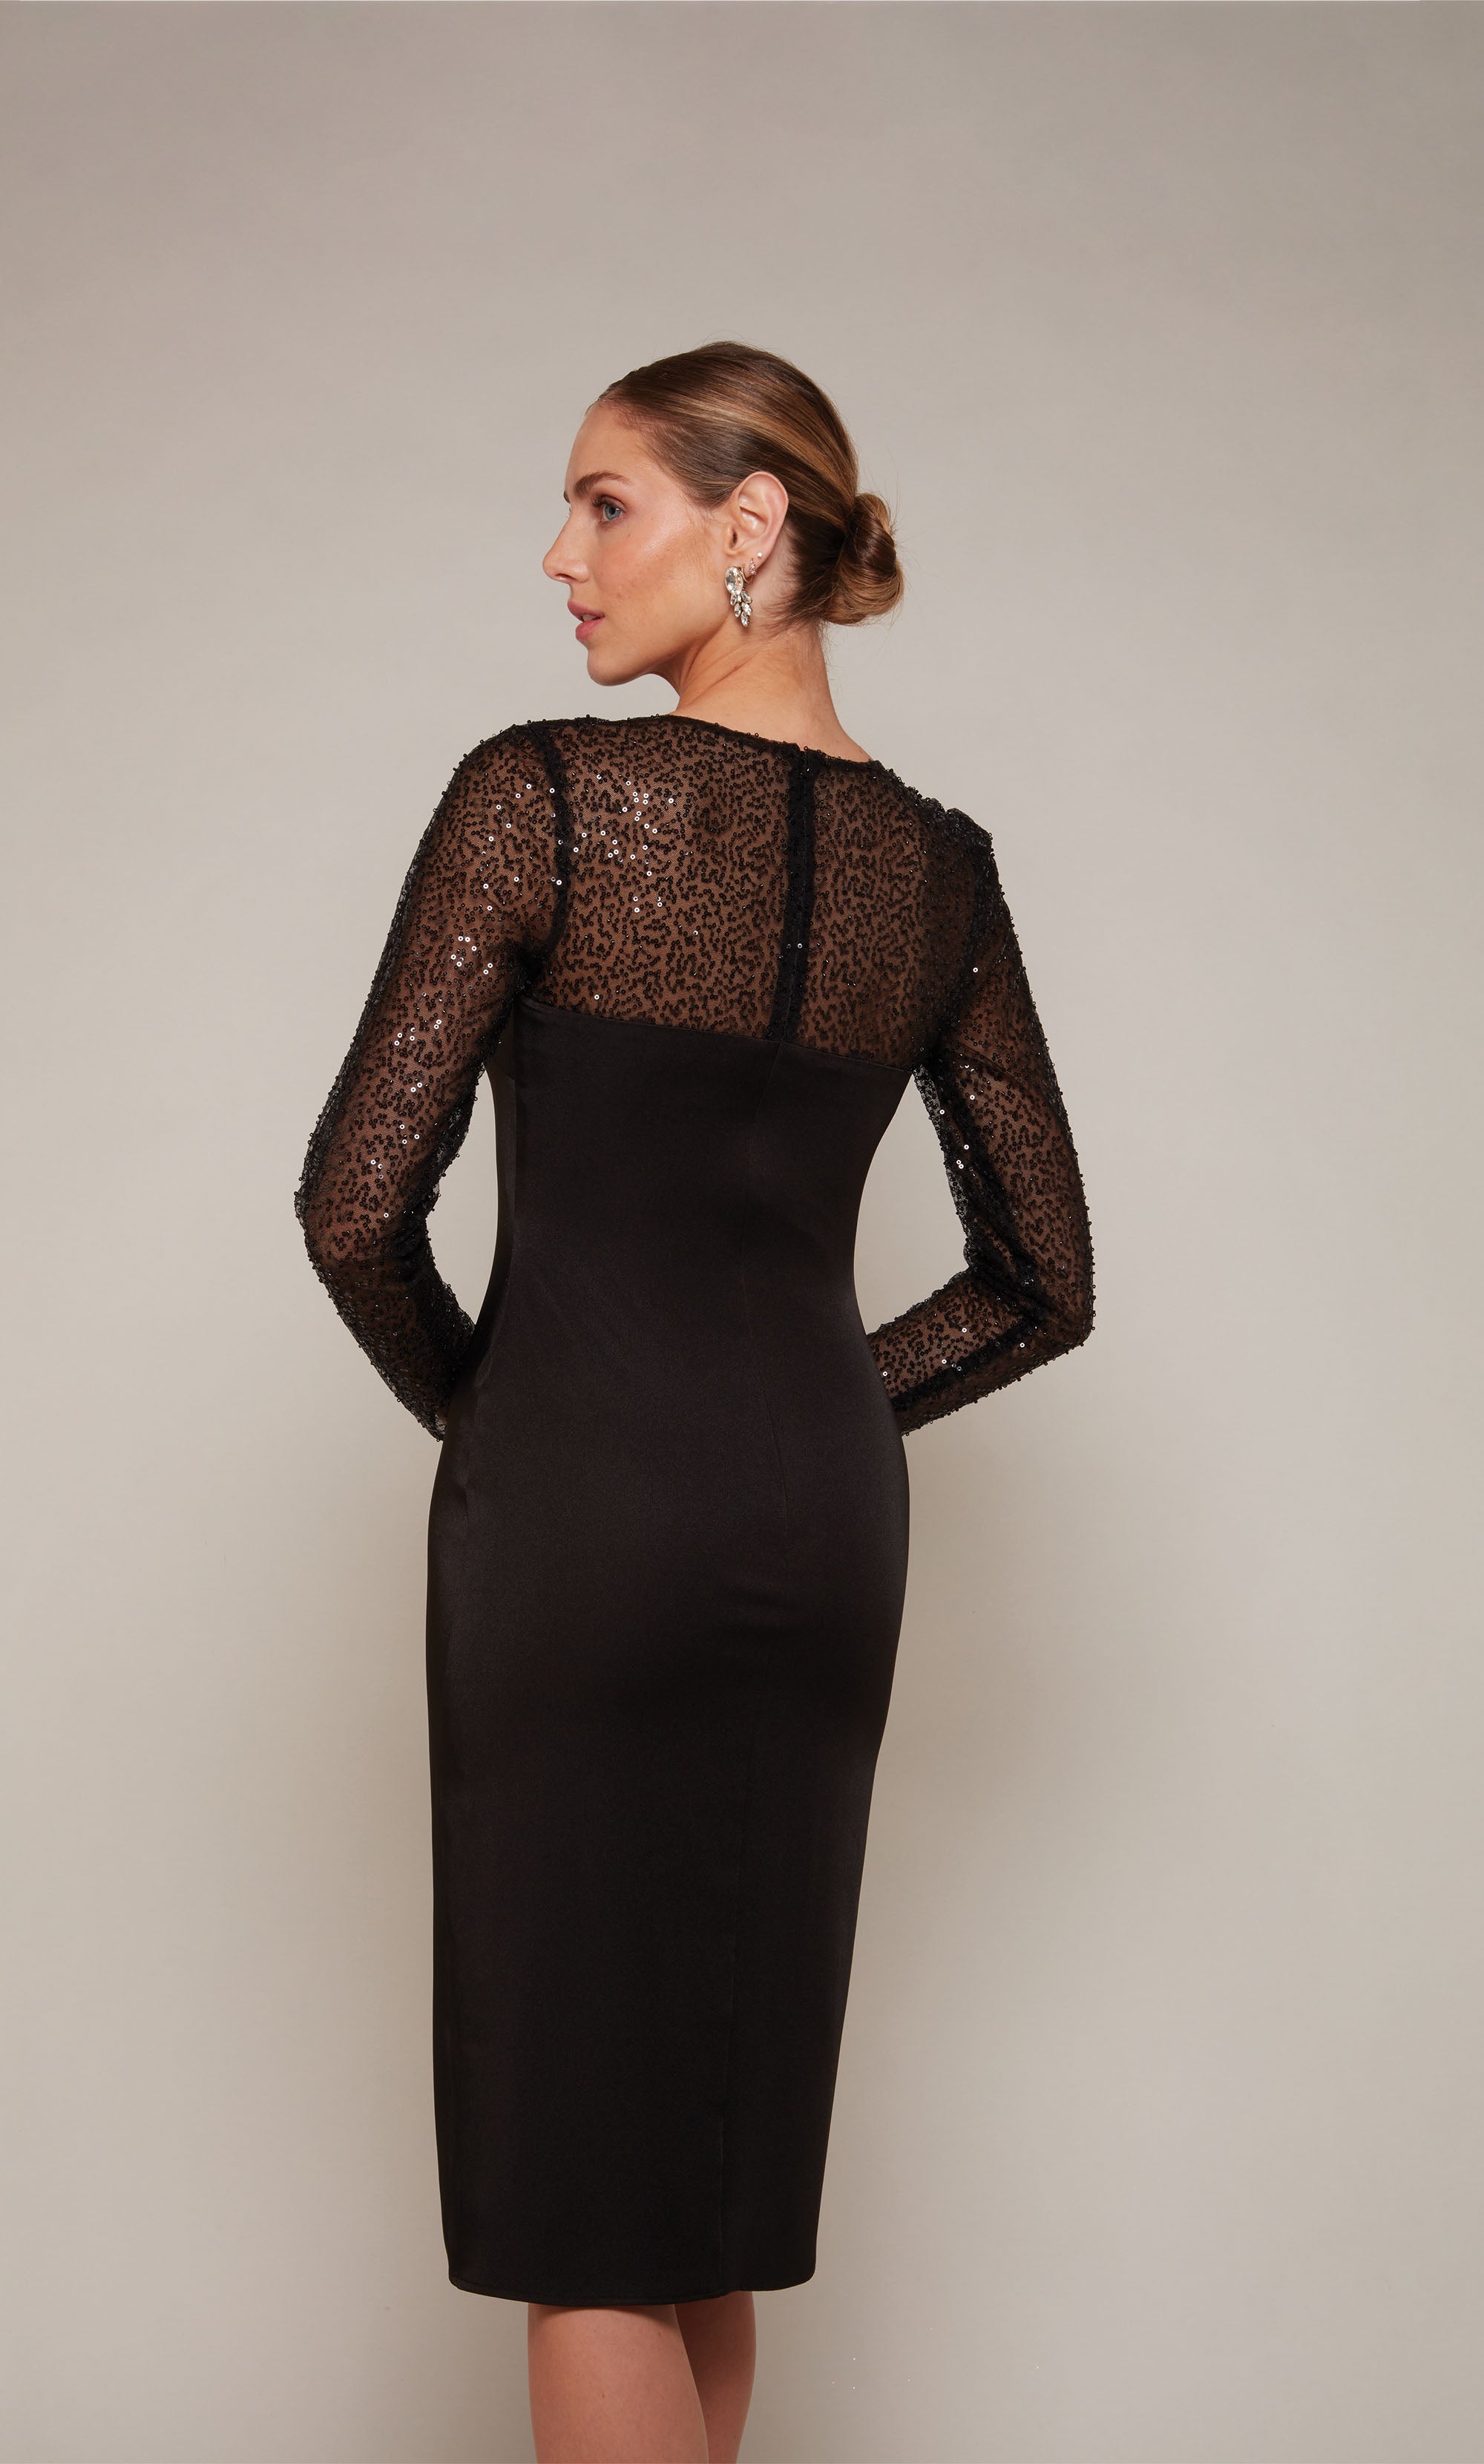 Cute Little Black Dress, Strapless Black Cocktail Dress, Online Boutique  Dress Lily Boutique